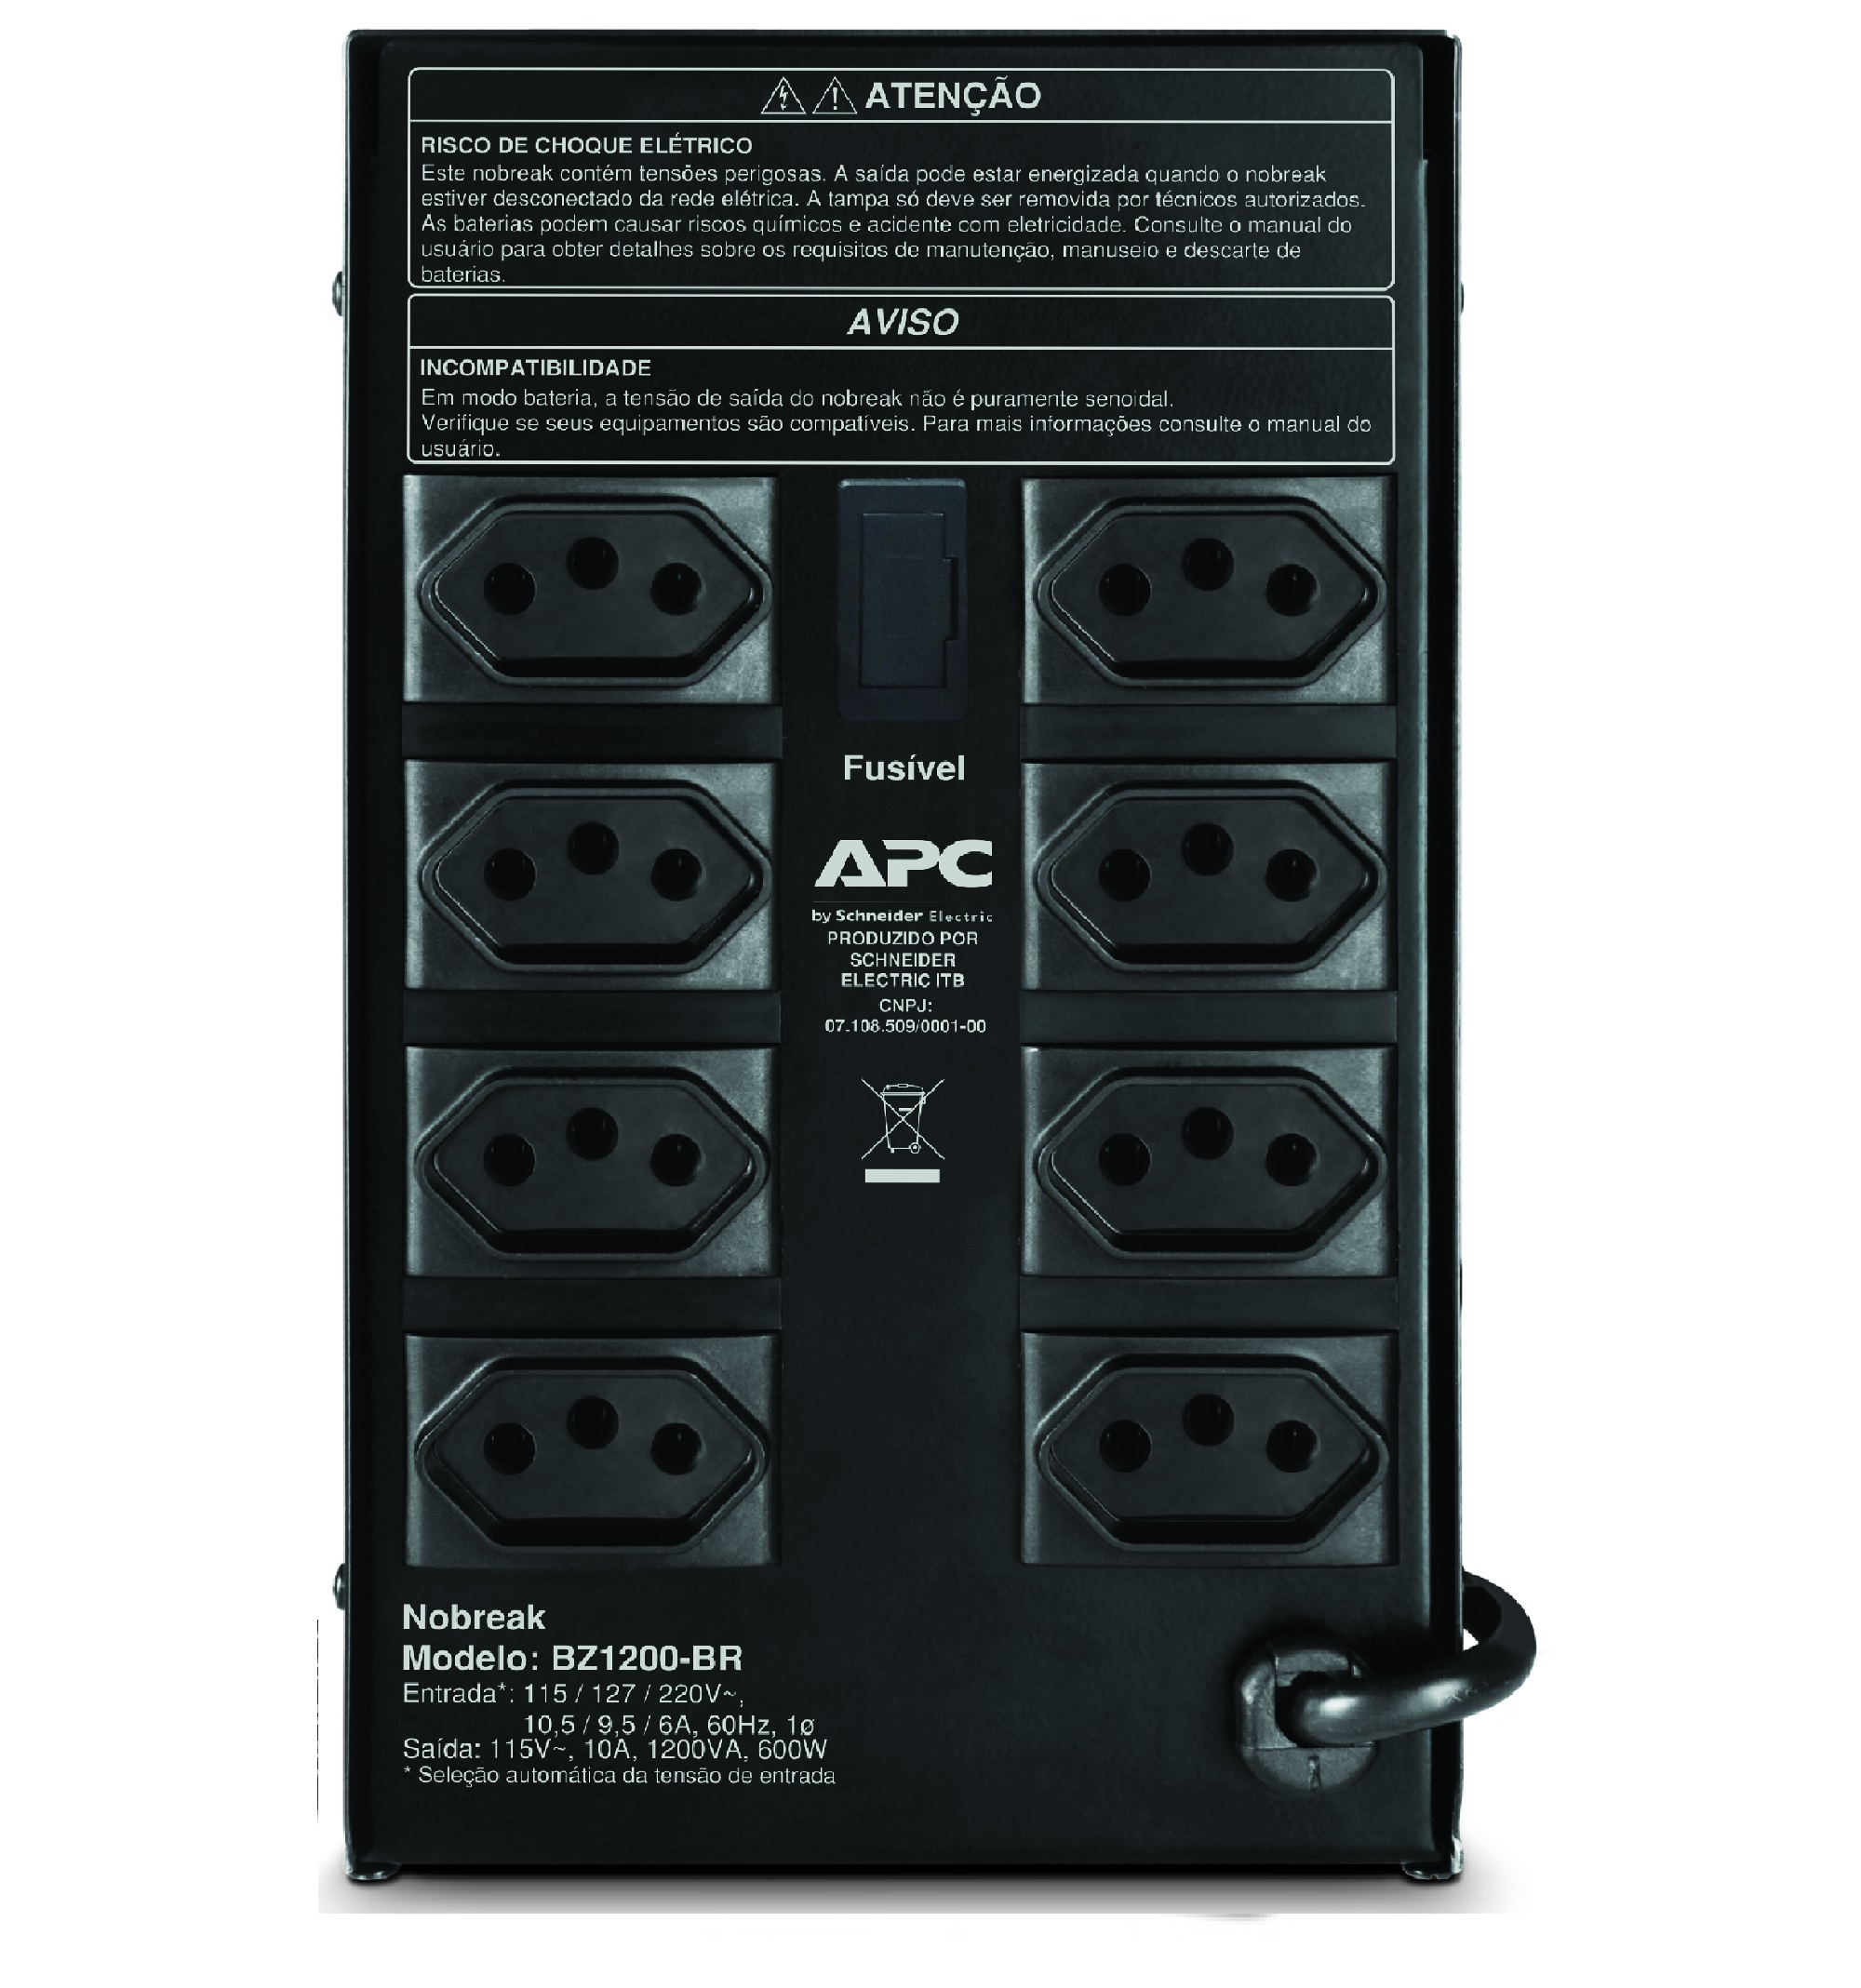  Back-UPS 1200 da APC, 115/220 V